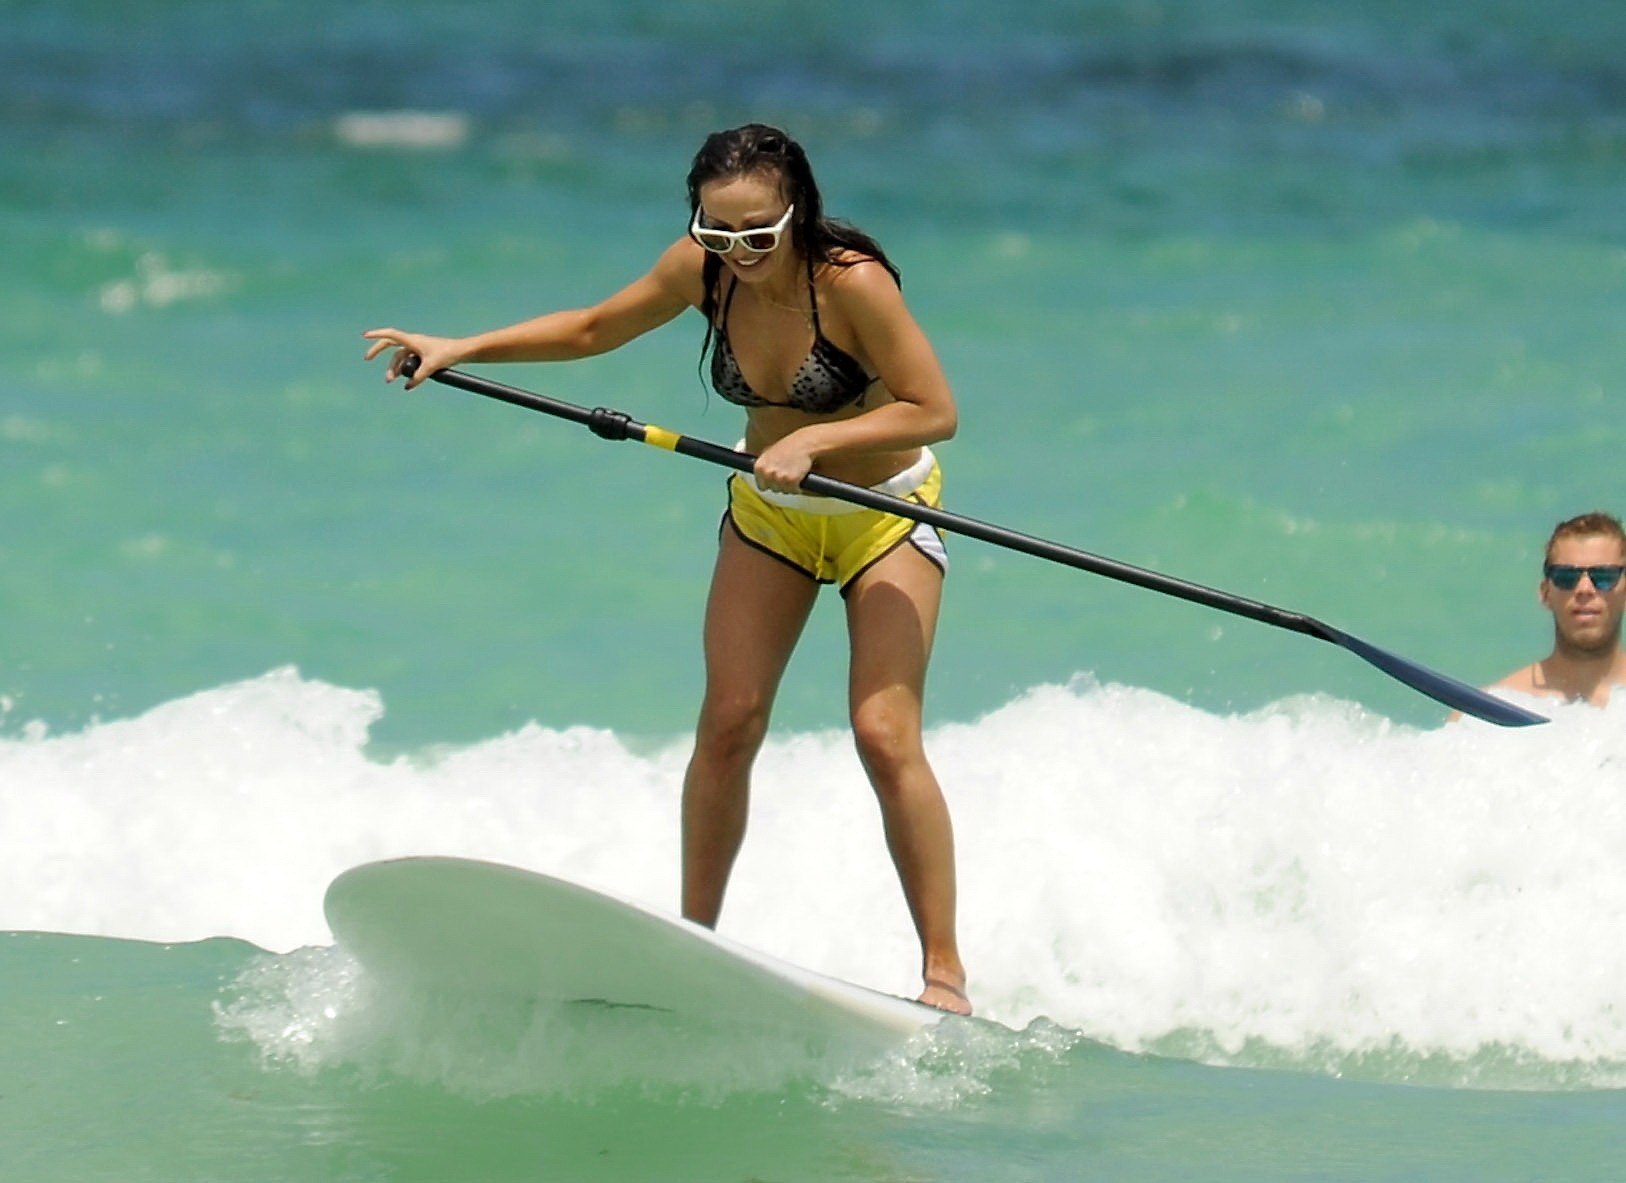 Karina smirnoff en train de faire du paddle surf sur la plage de miami avec un short en bikini
 #75256909